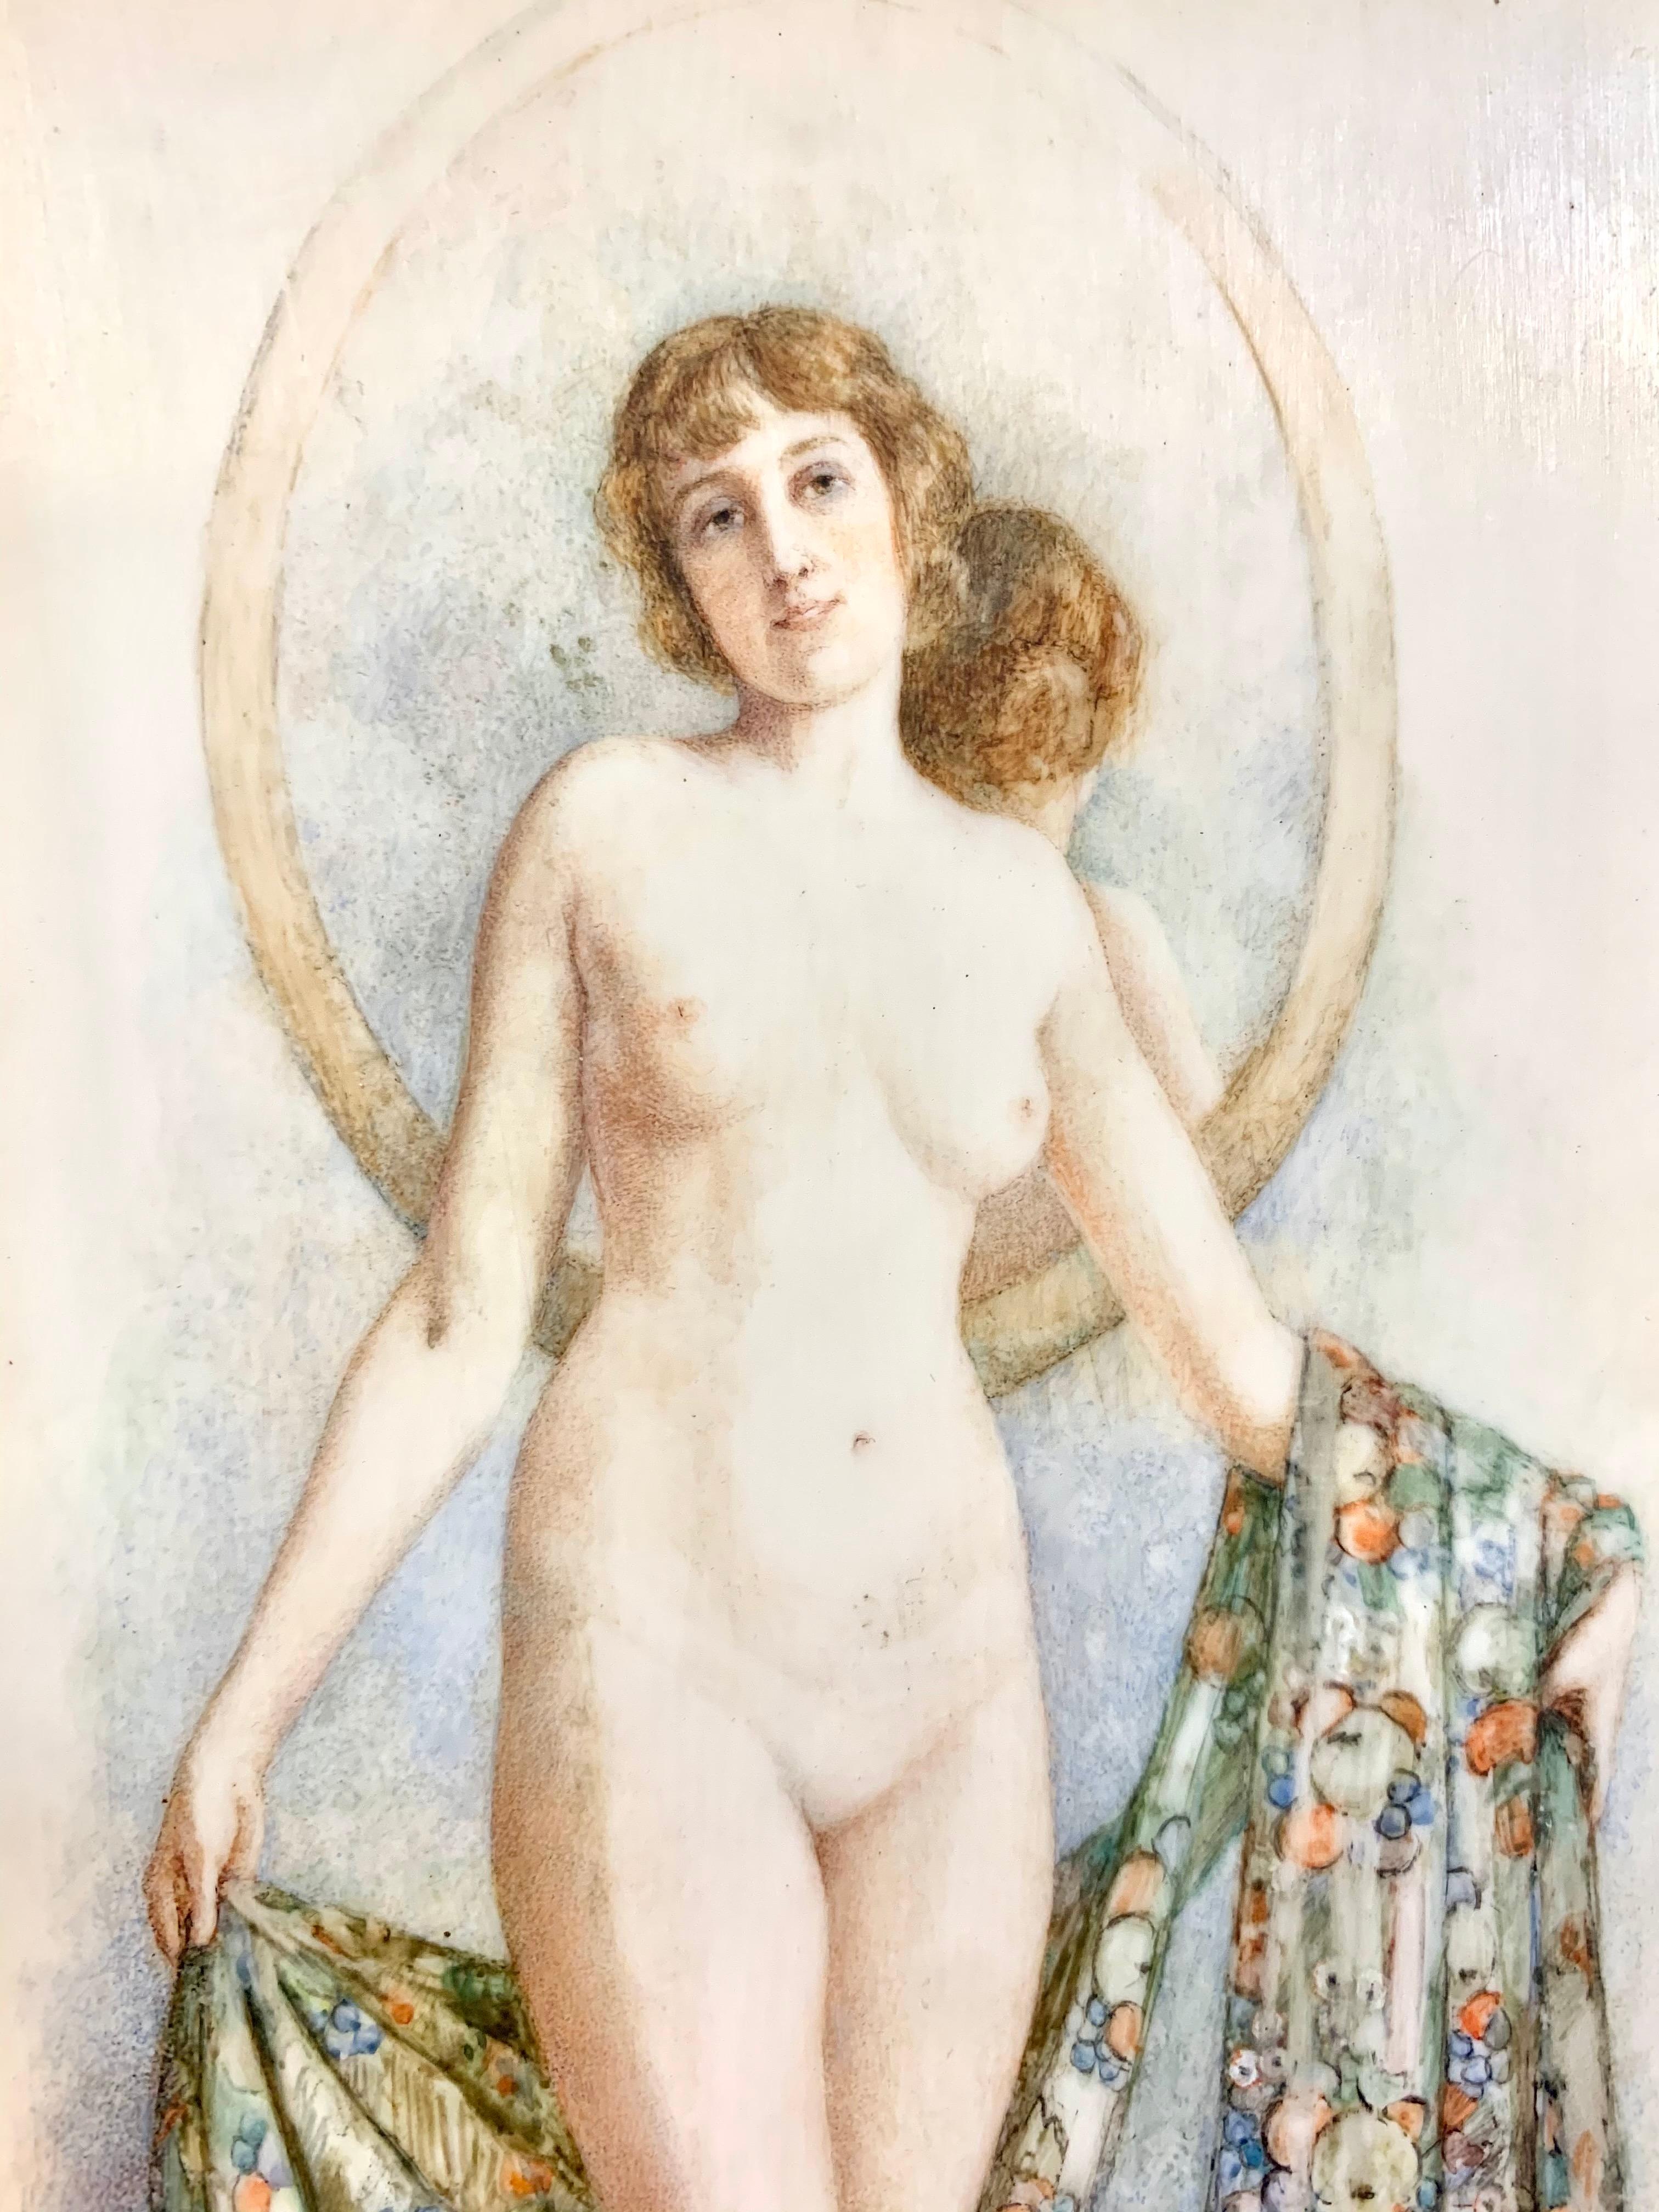 Nude Portrait with Mirror, Original Art Nouveau Painting 1914 - Beige Portrait Painting by Florence Atherton Edel